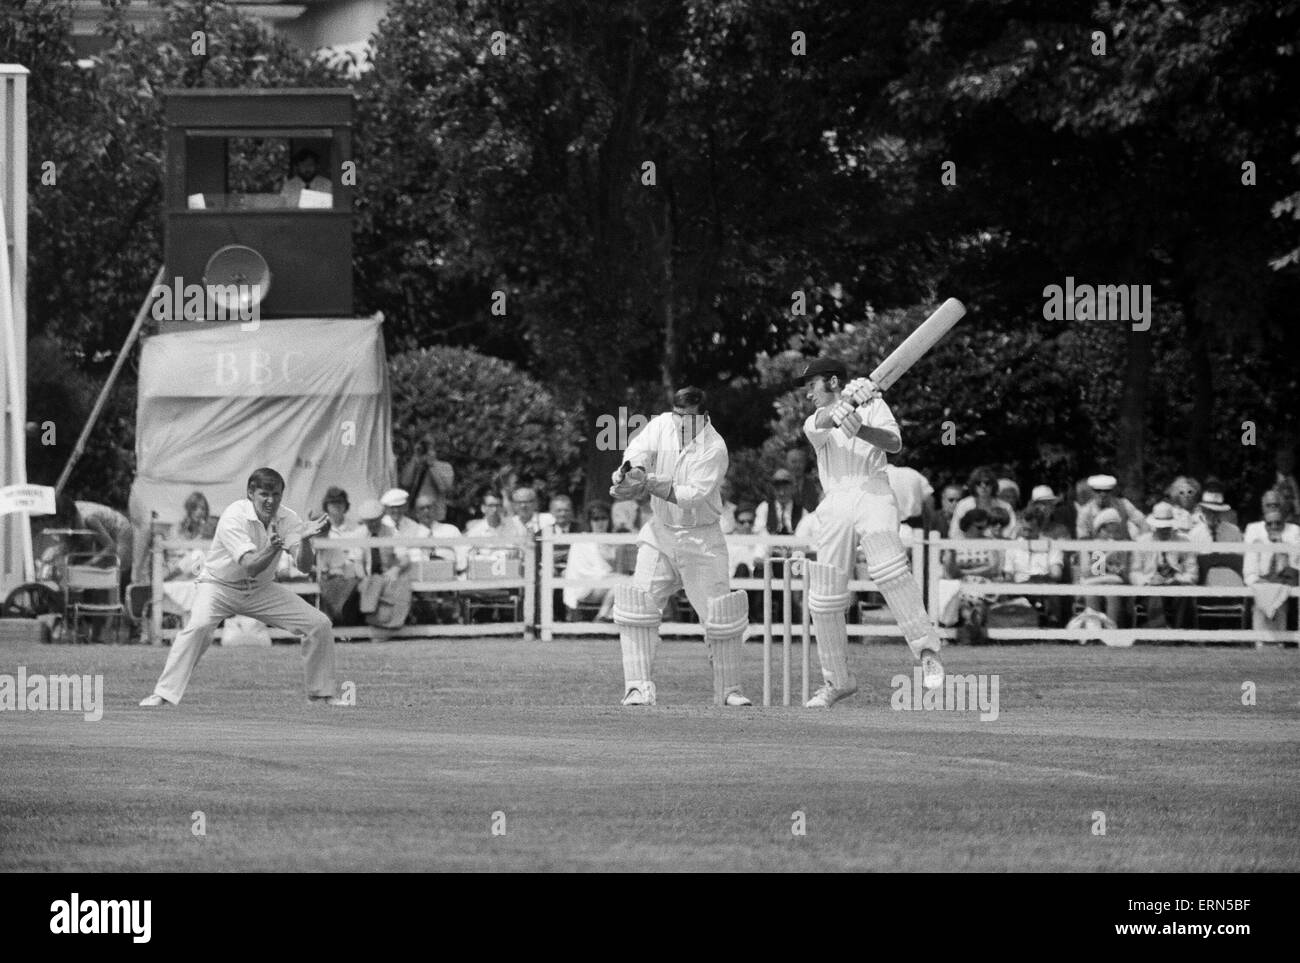 Essex V Lancashire County Cricket Championship match bei Valentins Park, Ilford. Essex Batsman spielt und während seiner Seite Innings vermisst. 13. Juni 1970. Stockfoto